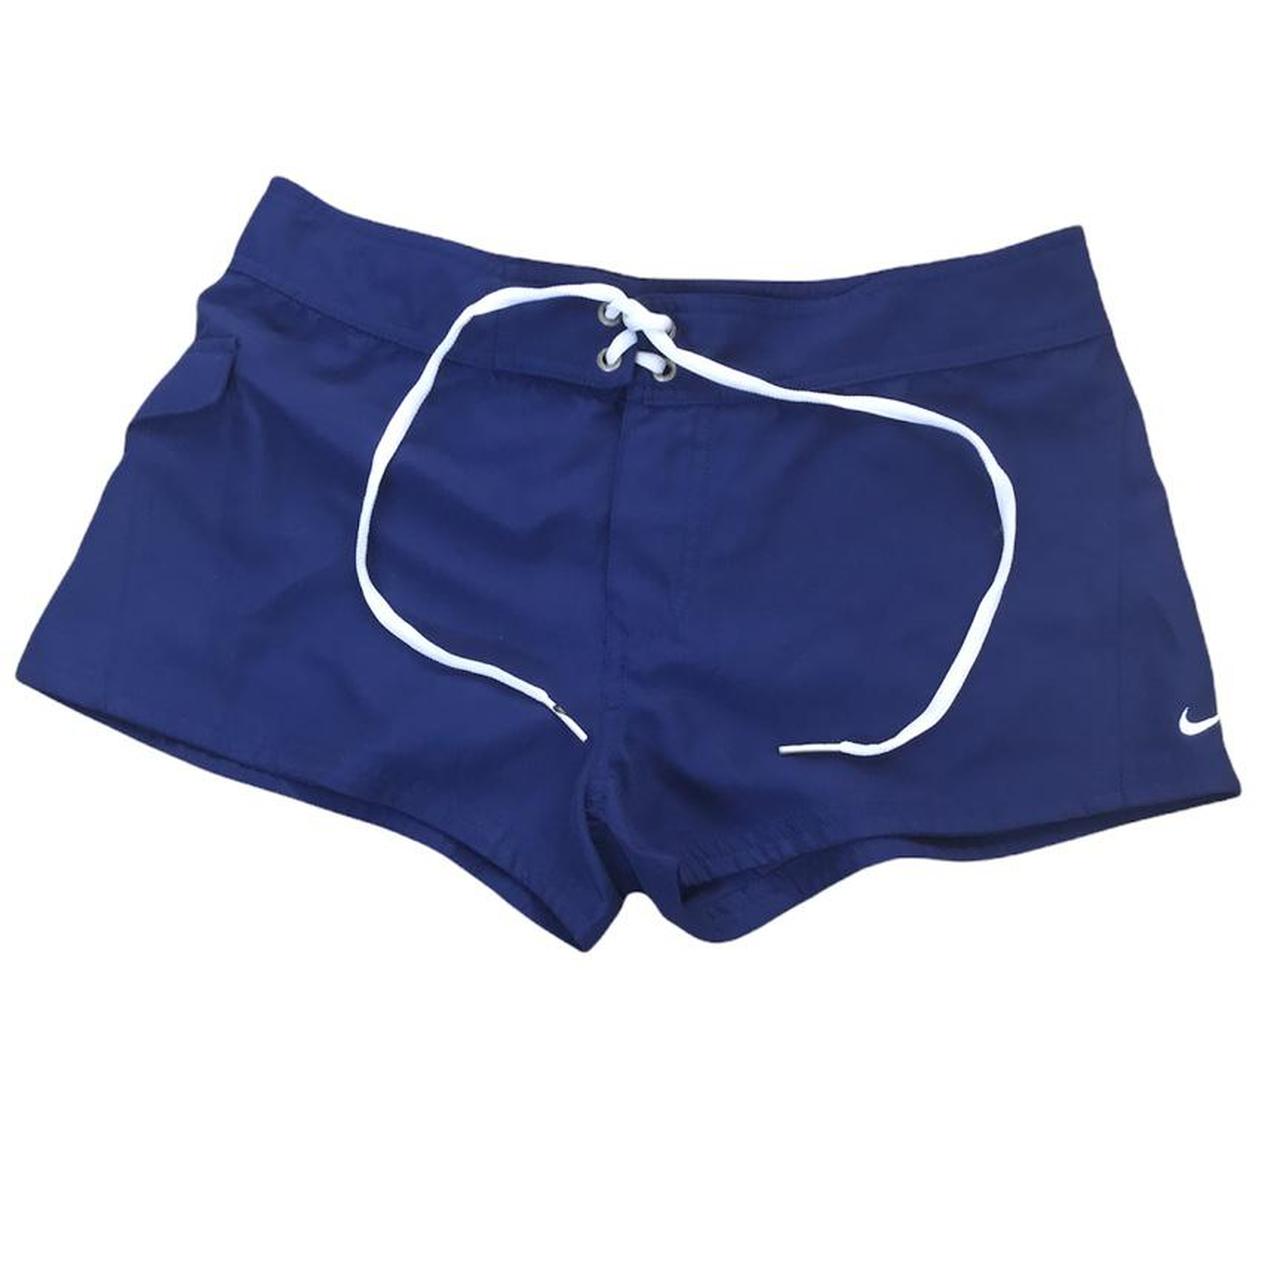 Product Image 1 - Nike Swim Shorts 

- Size